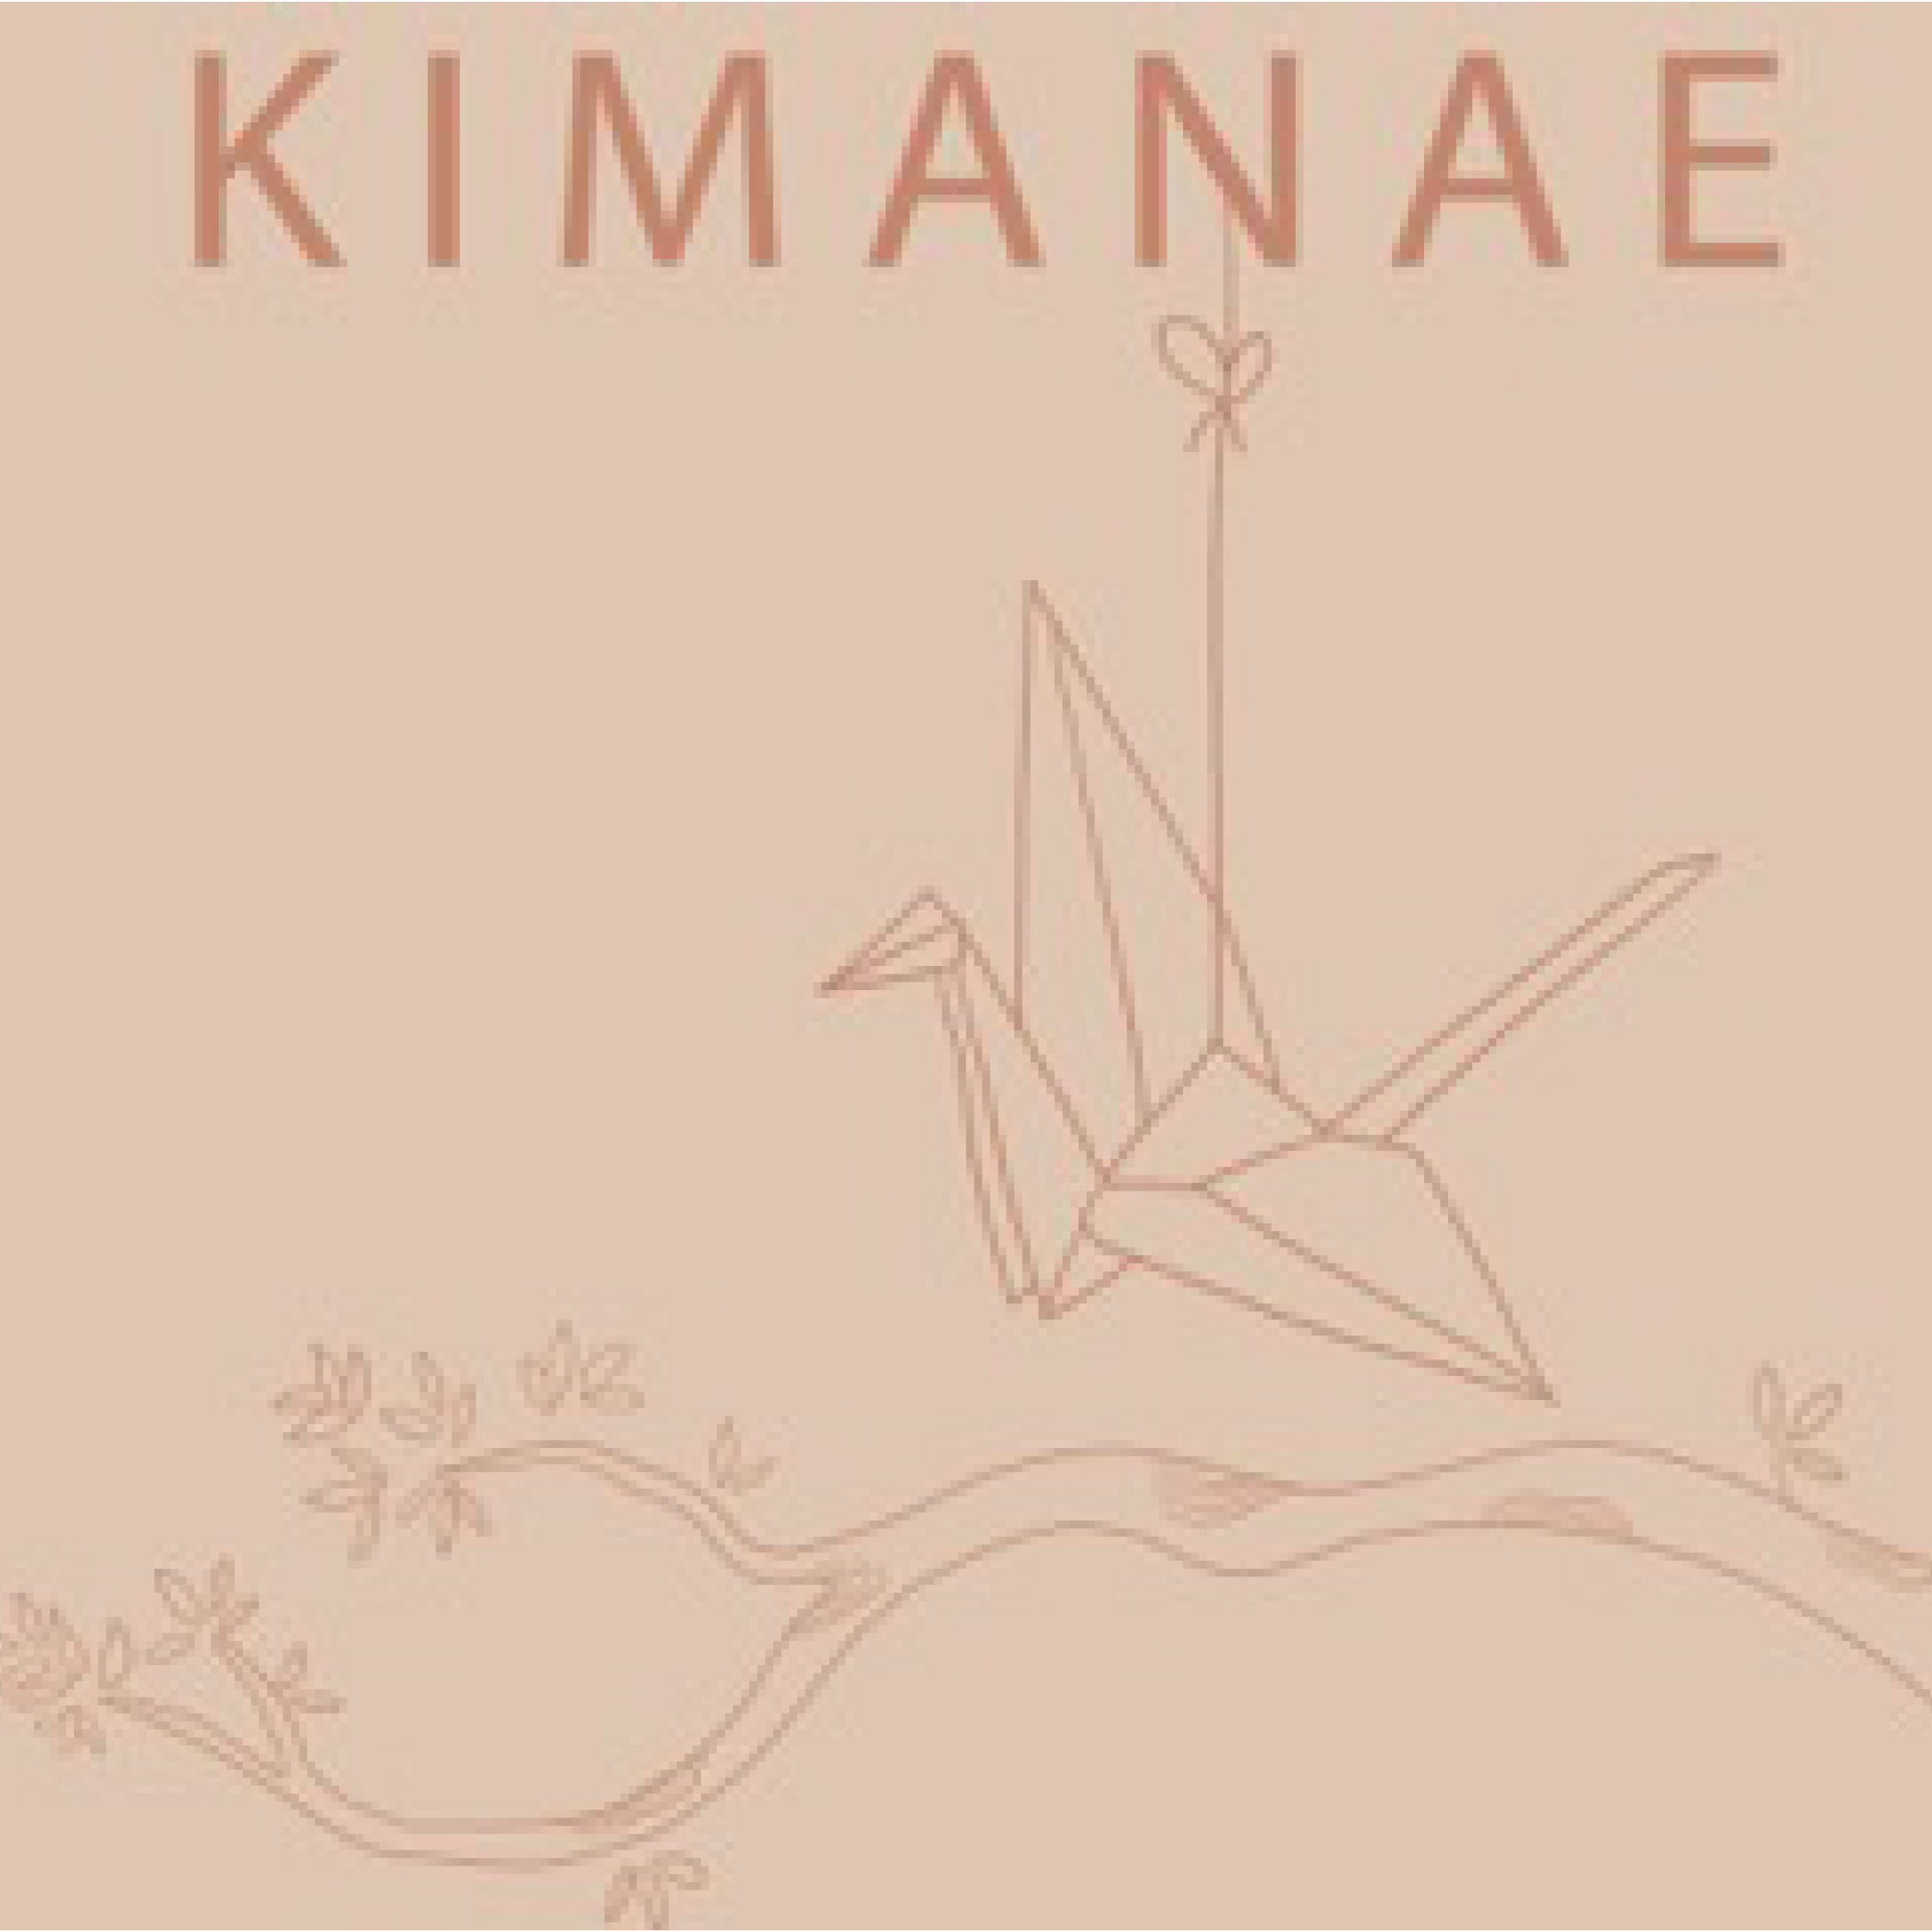 Kimanae